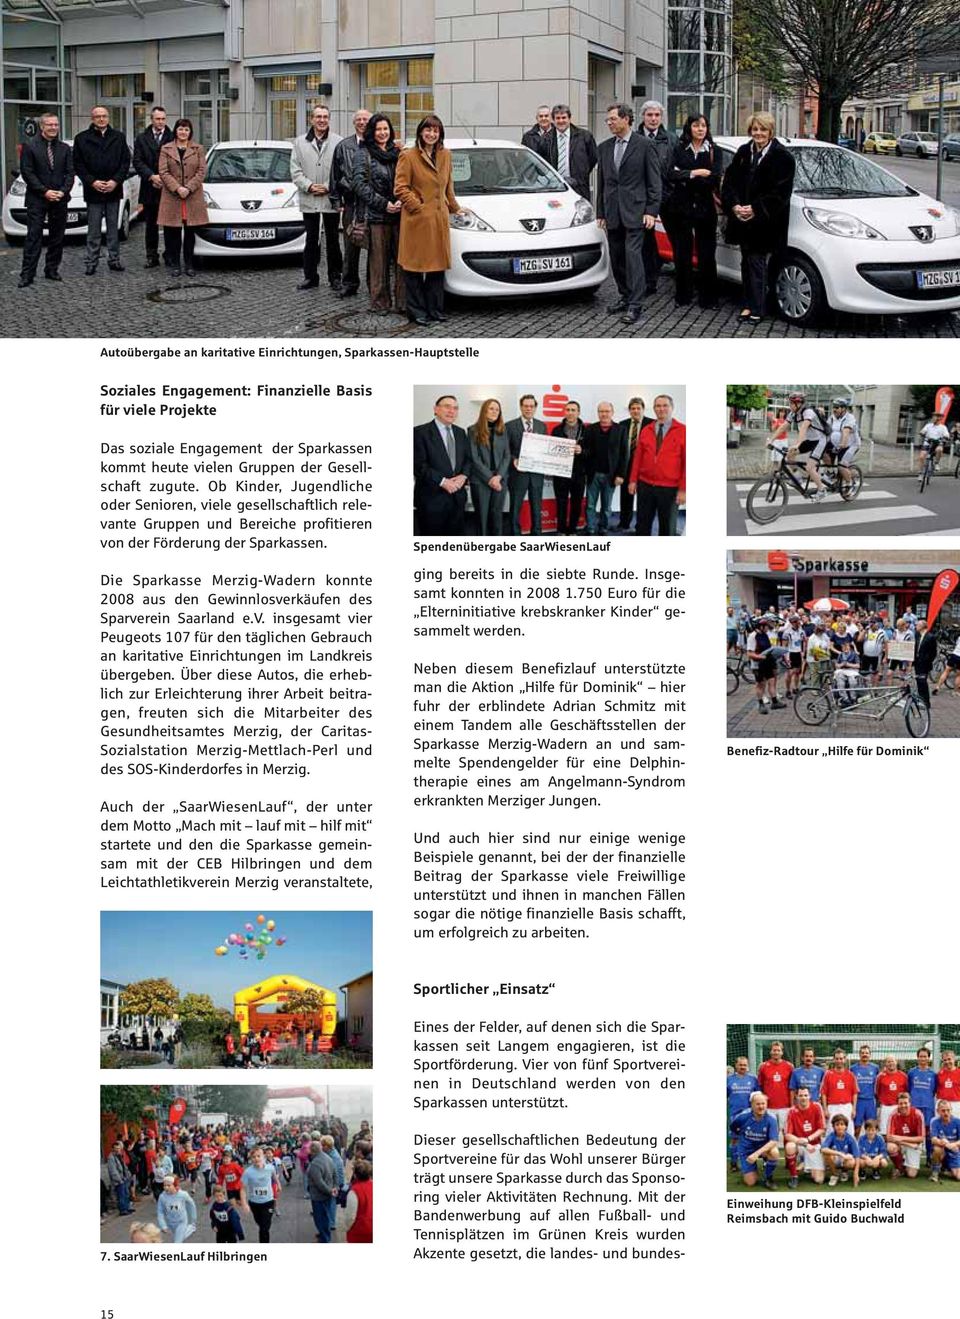 Die Sparkae Merzig-Wadern konnte 2008 au den Gewinnloverkäufen de Sparverein Saarland e.v. ingeamt vier Peugeot 107 für den täglichen Gebrauch an karitative Einrichtungen im Landkrei übergeben.